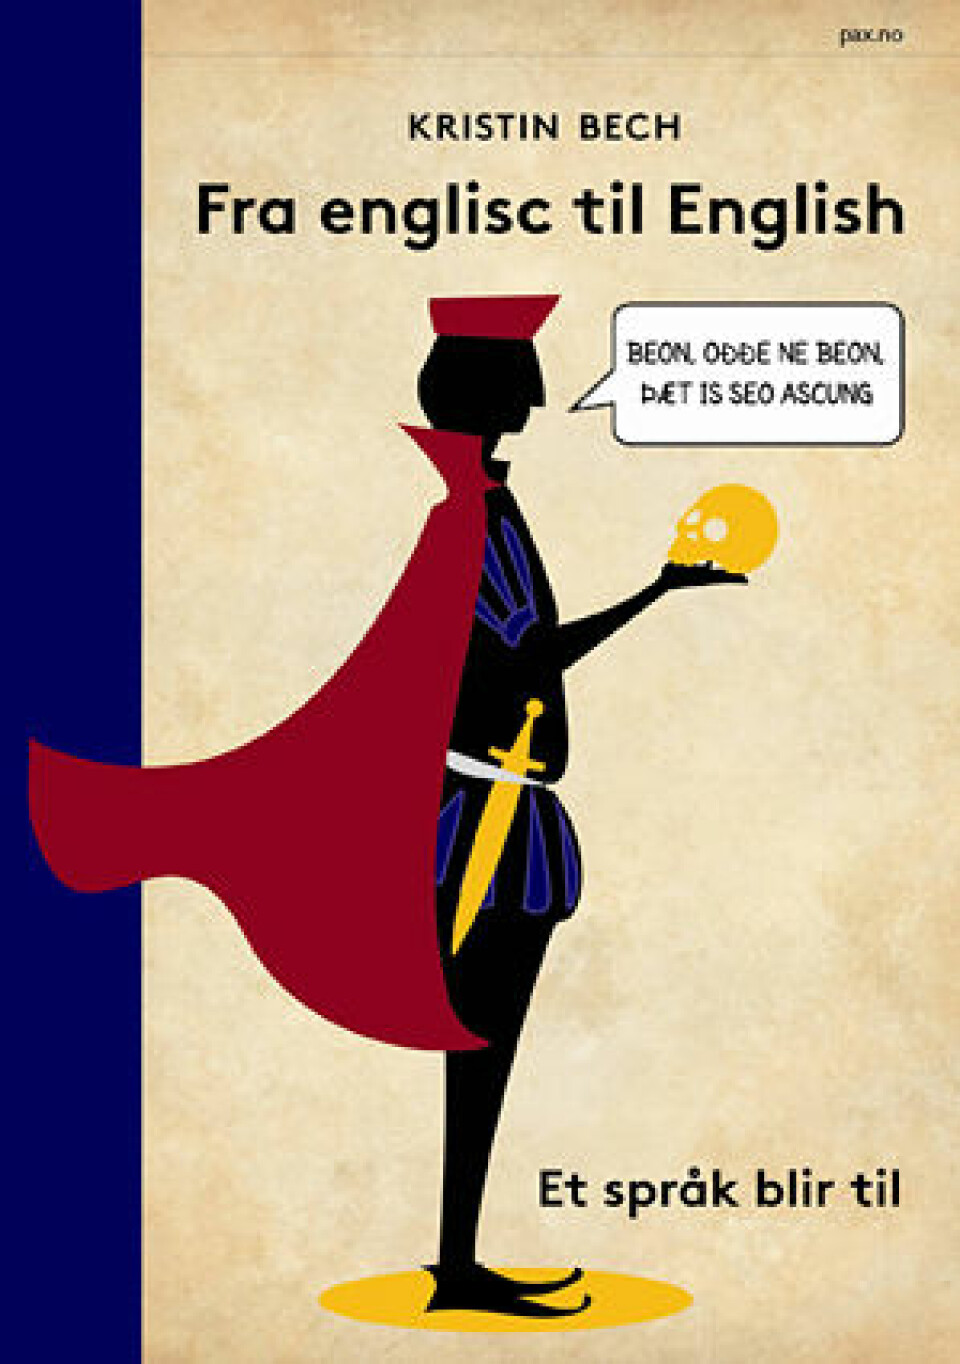 Fra englisc til English er historien om hvordan et språk blir til, fortalt med glød og kjærlighet. Leserene får kjennskap til hvordan engelsk har oppstått og utviklet seg, på et bakteppe av historiske hendelser. (Foto: Pax.no)